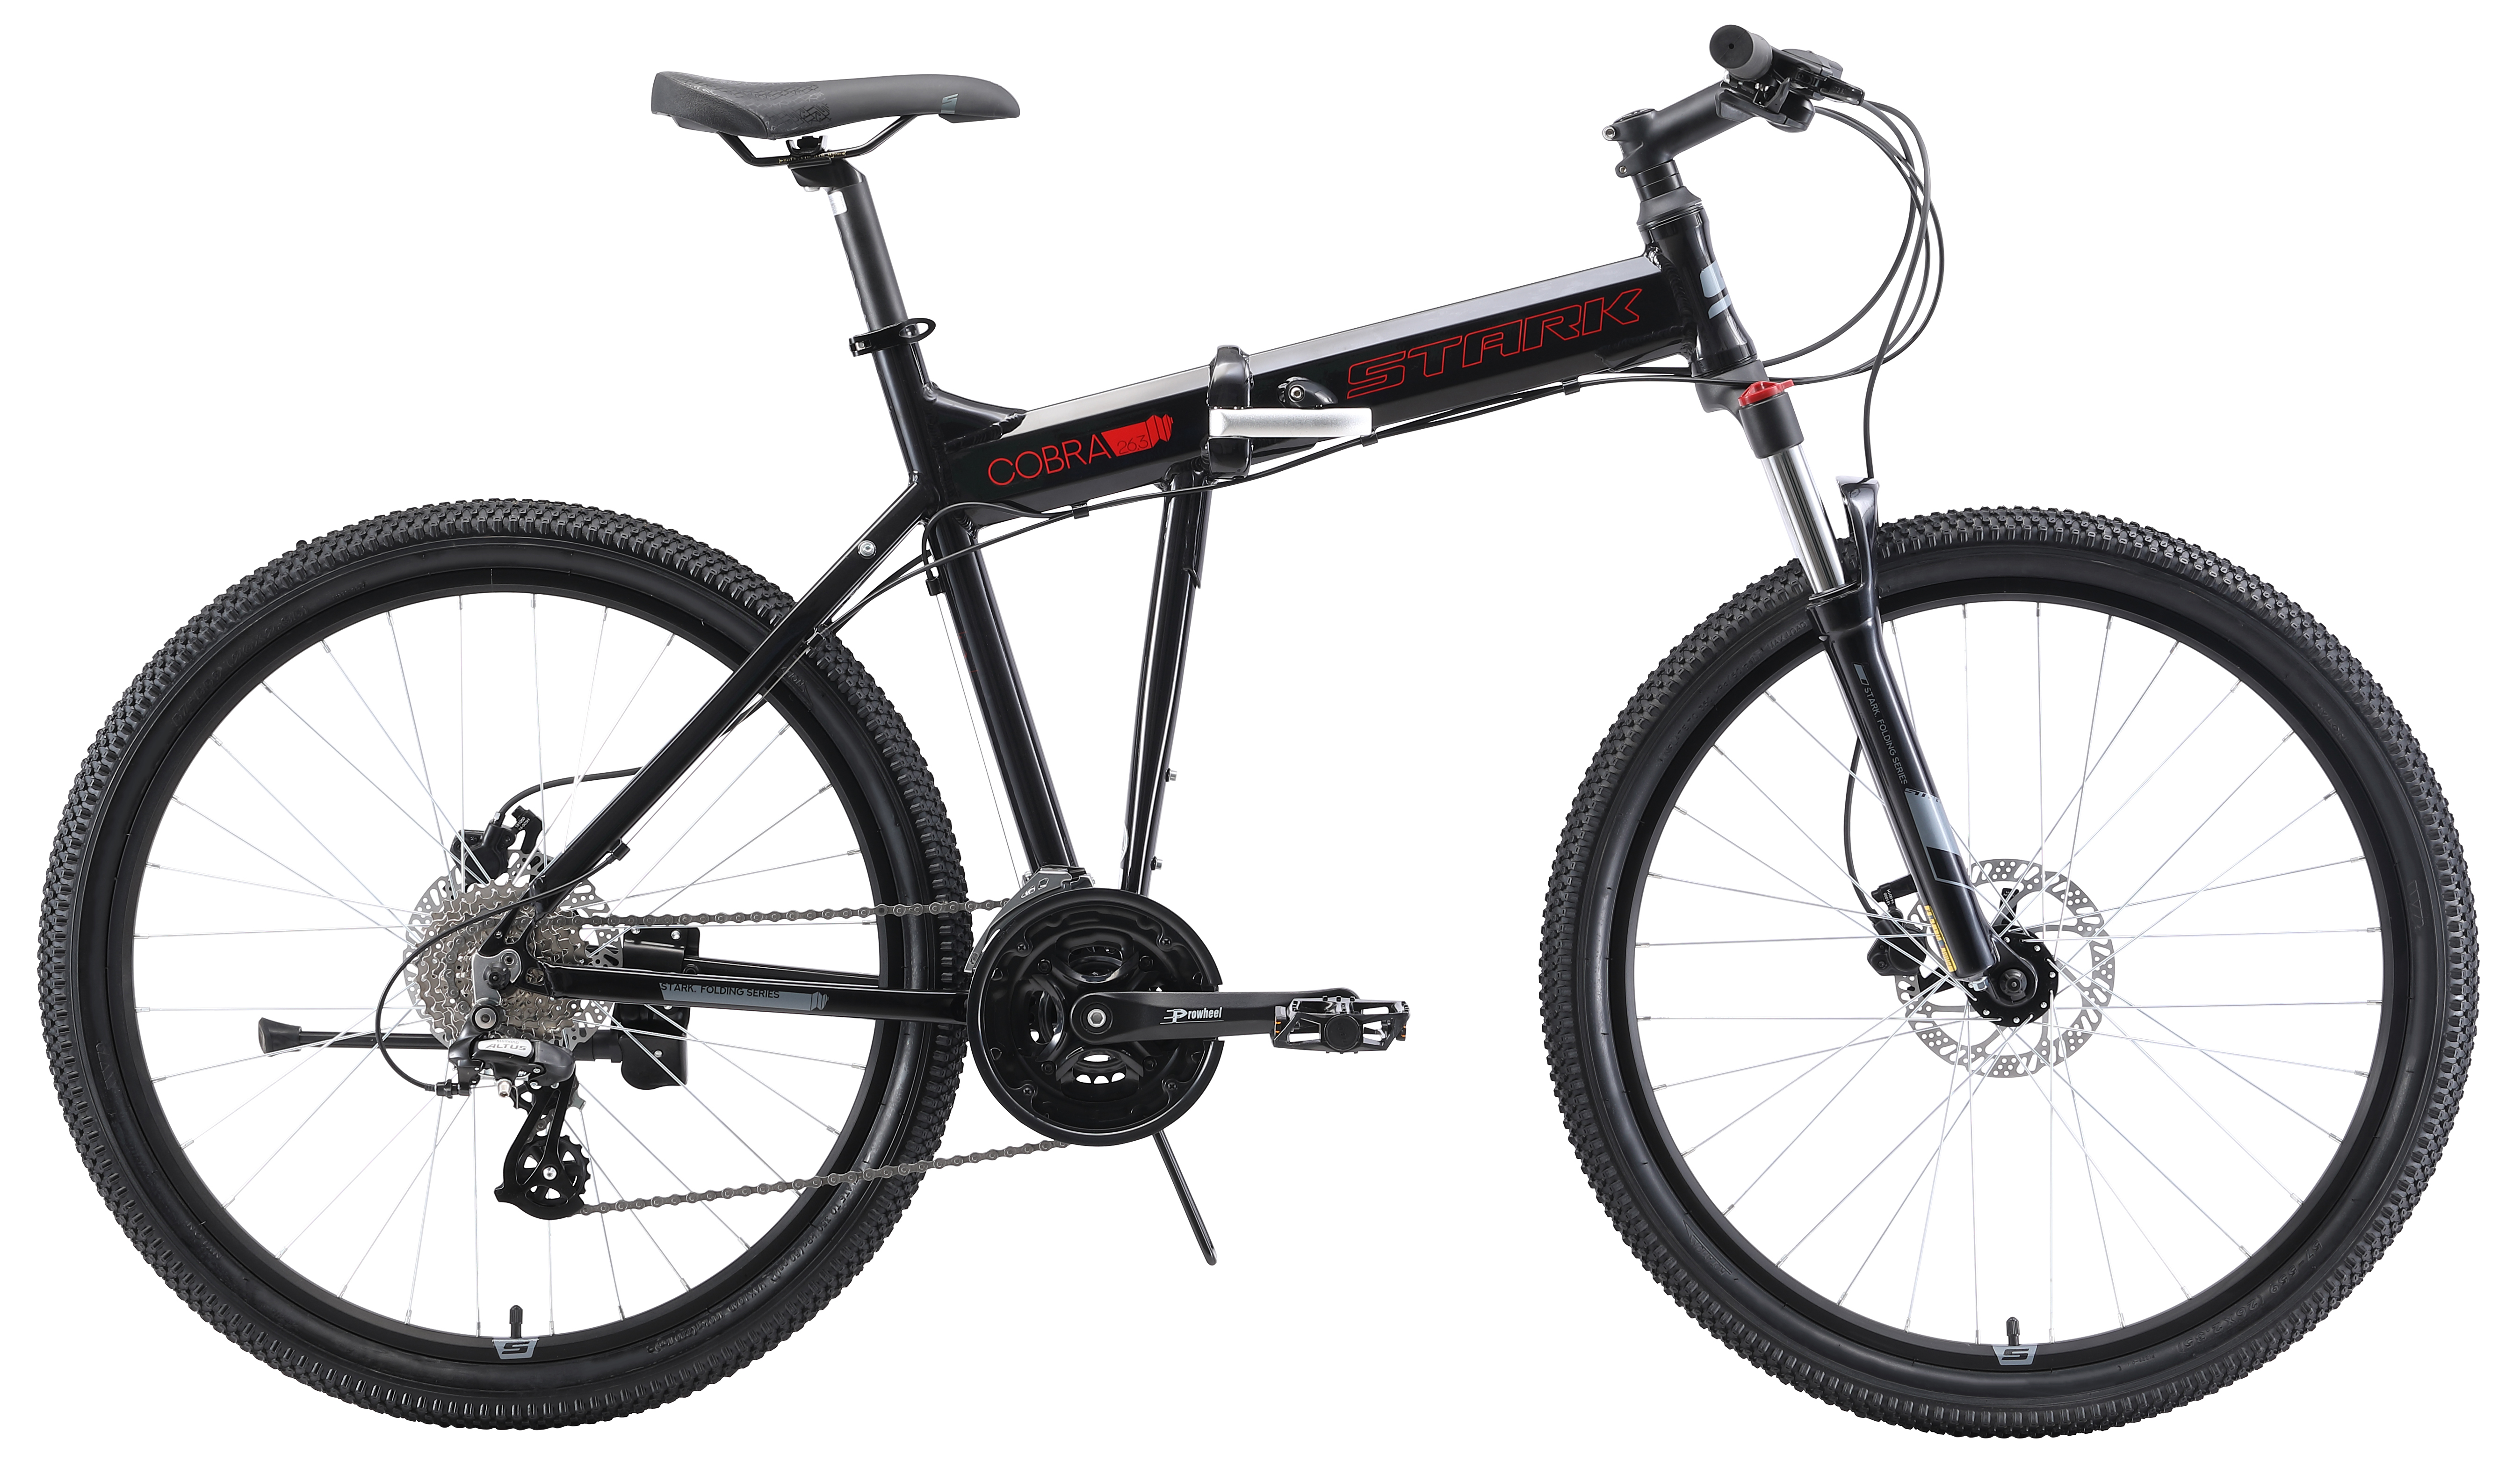  Отзывы о Складном велосипеде Stark Cobra 26.3 HD 2019